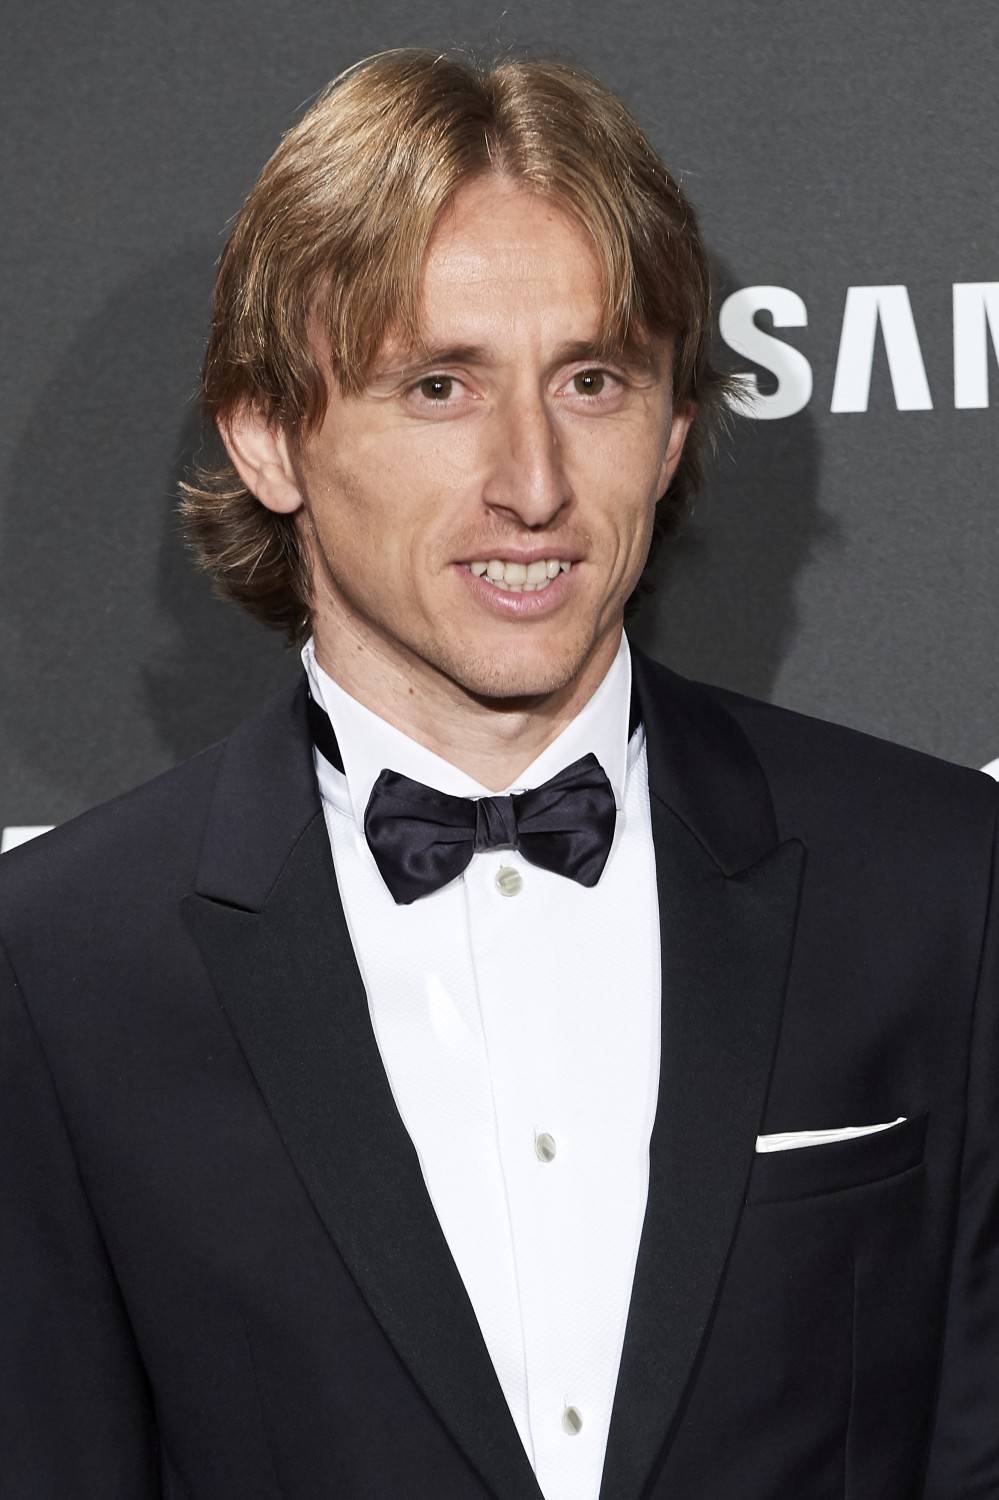 Da profugo a campione: la storia di Luka Modric